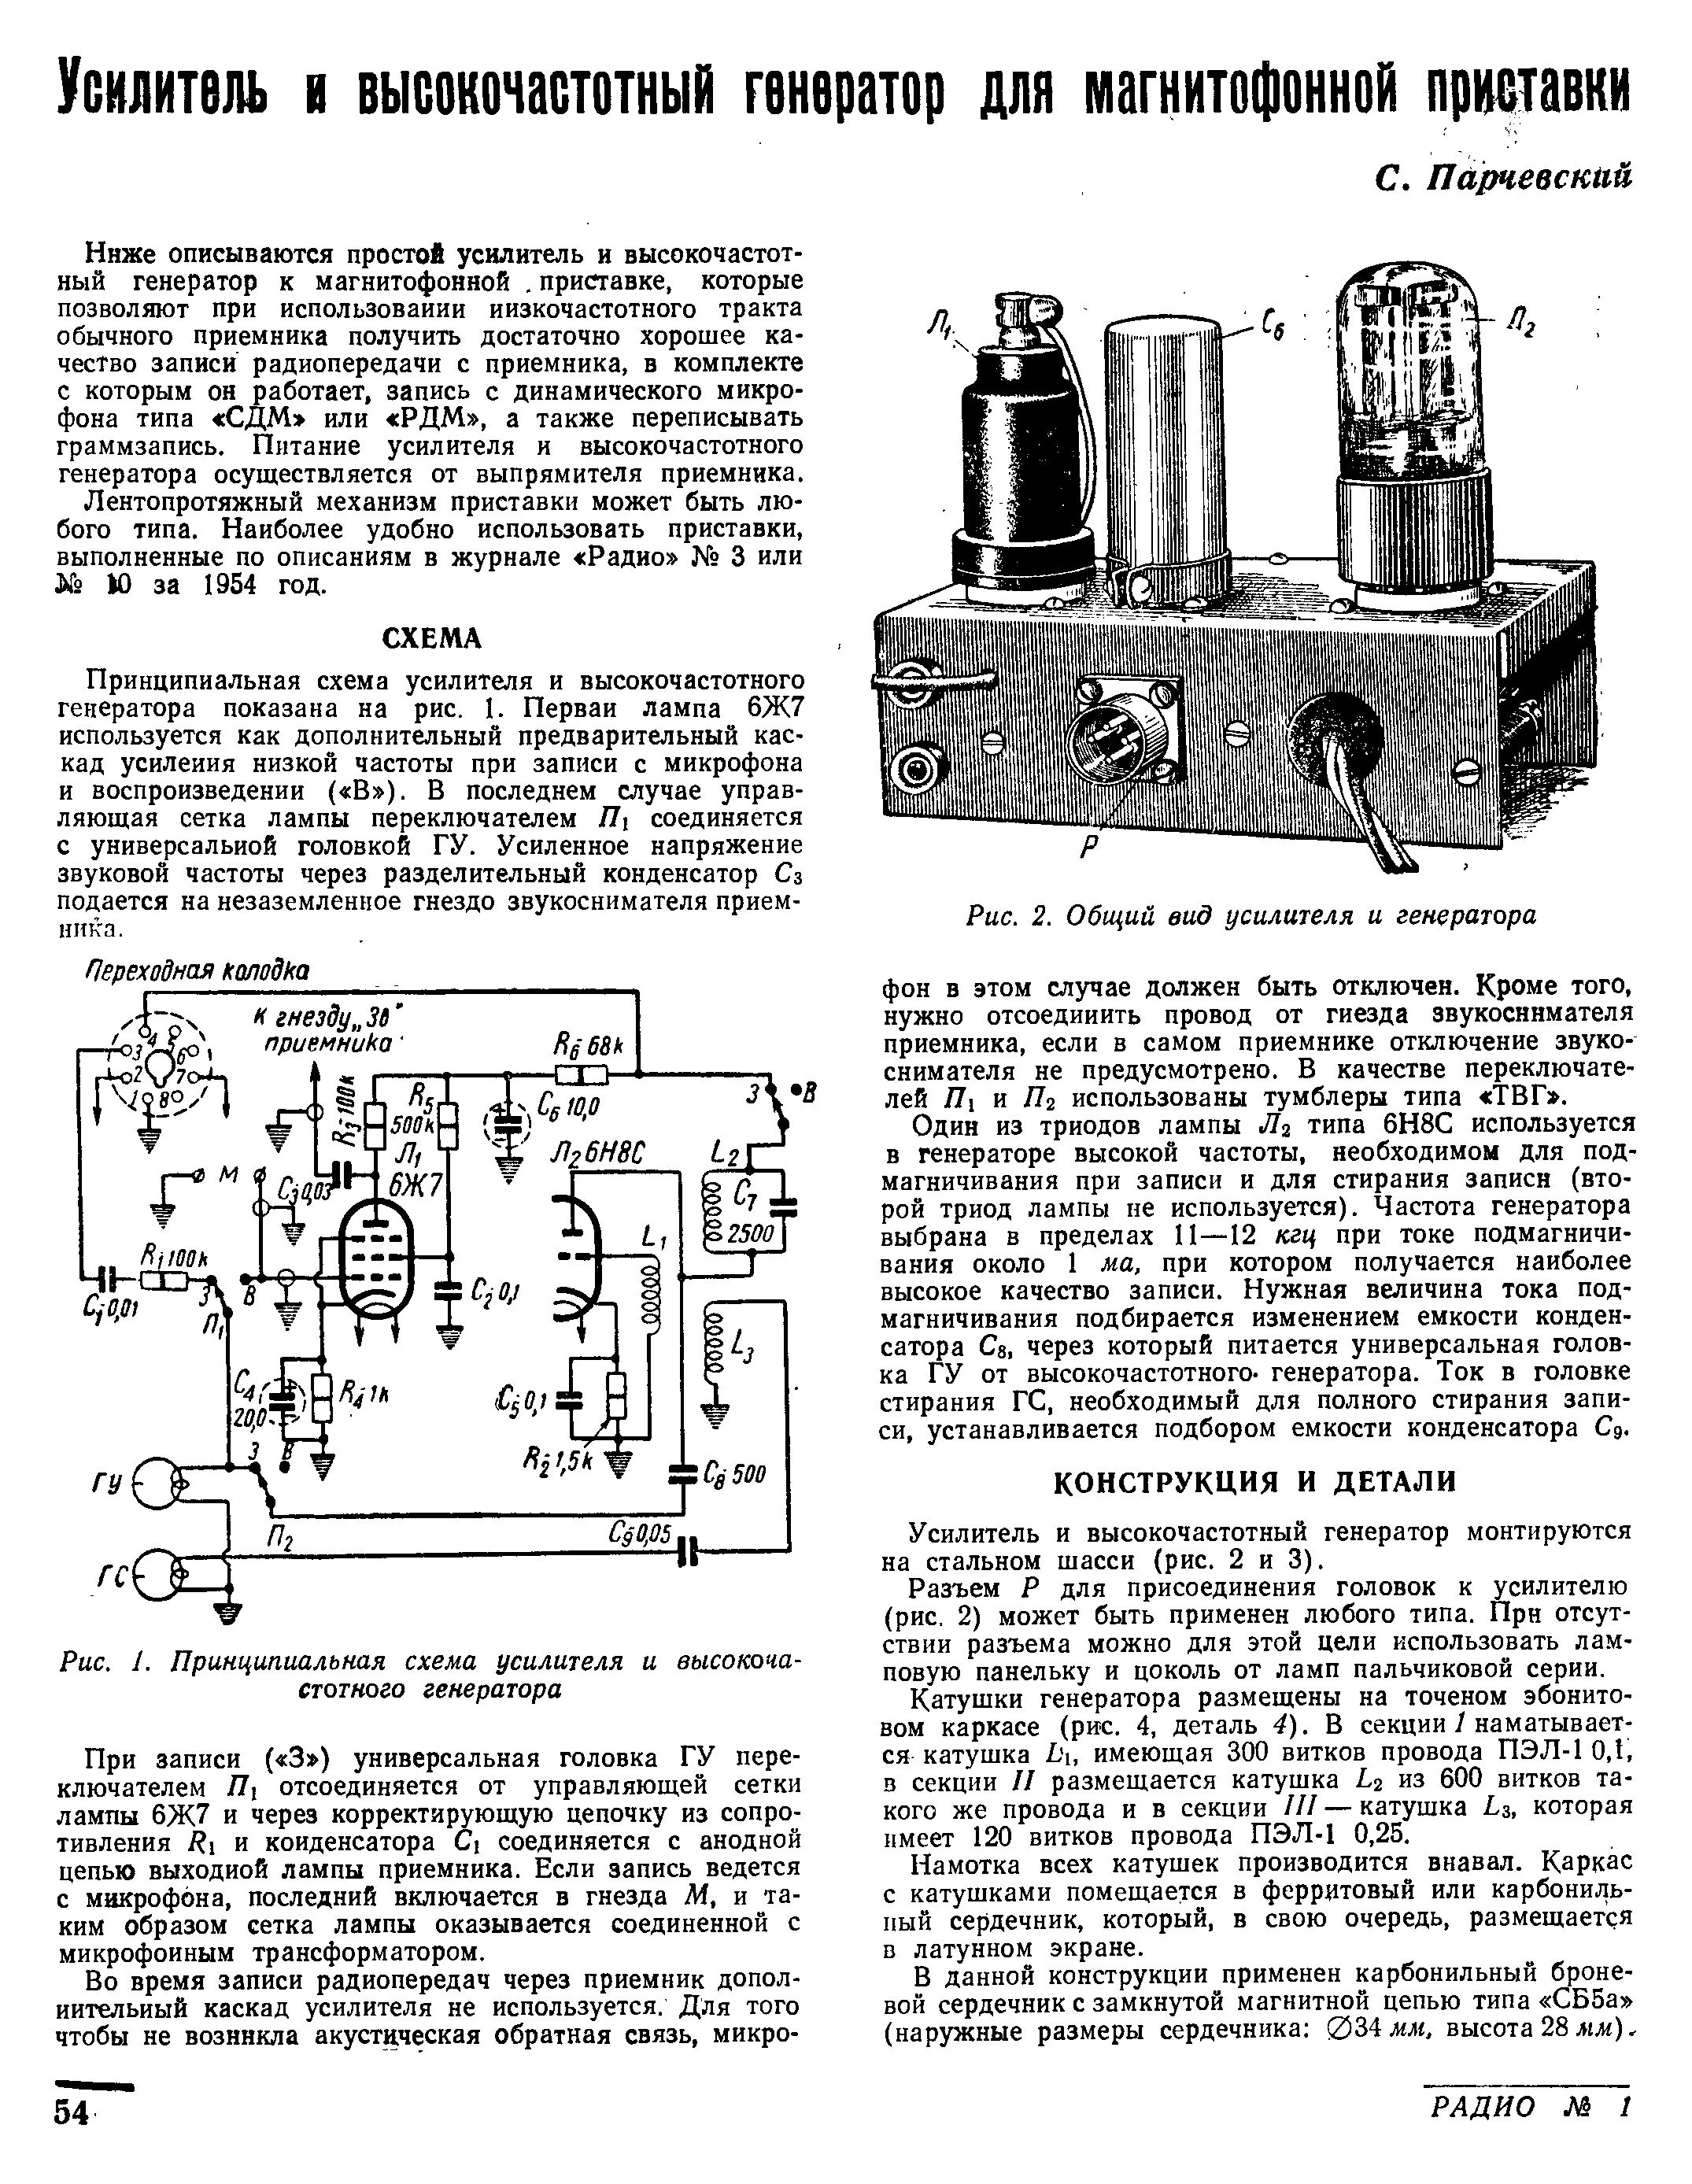 Усилитель и высокочастотный генератор для магнитофонной приставки